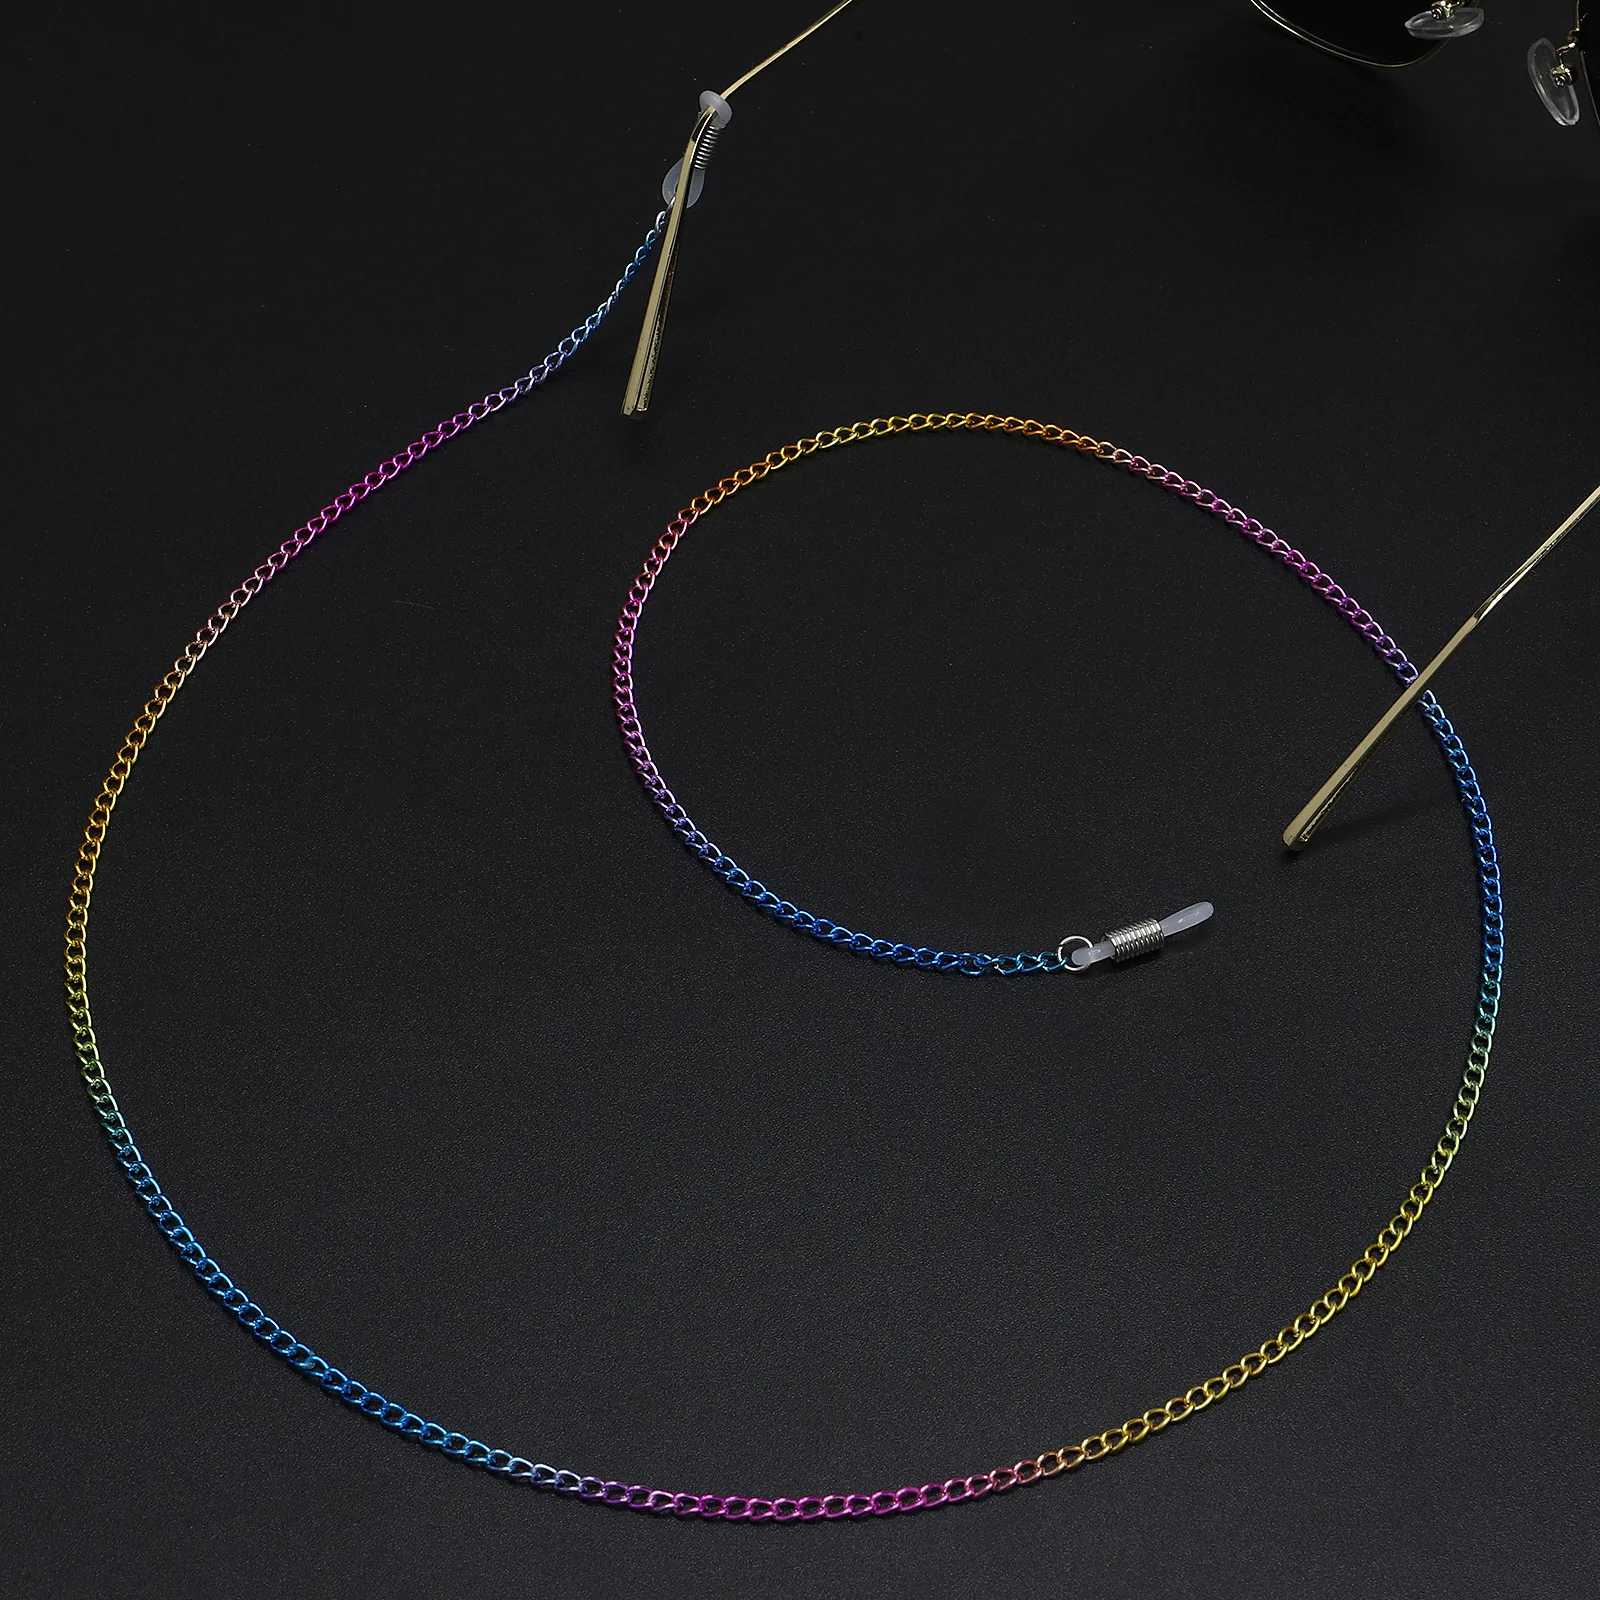 Противоскользящий популярный металлический шнур для очков поддерживает цвет радуги, не выцветает, крутая цепочка для очков